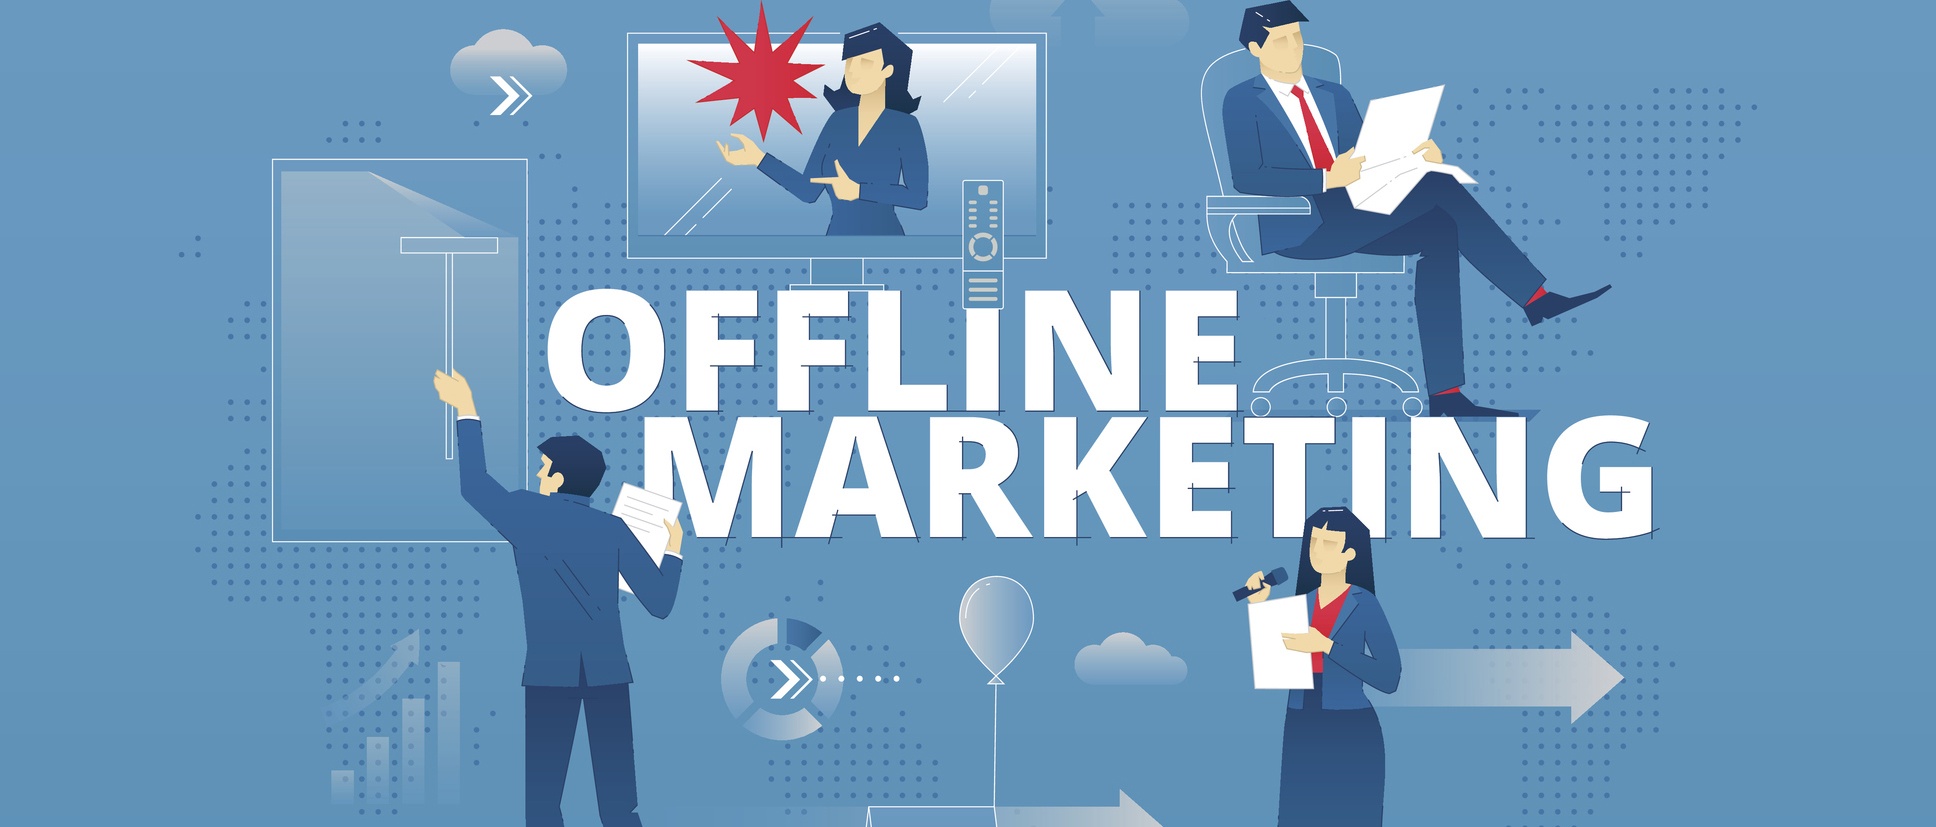 Online Success Through Offline Marketing